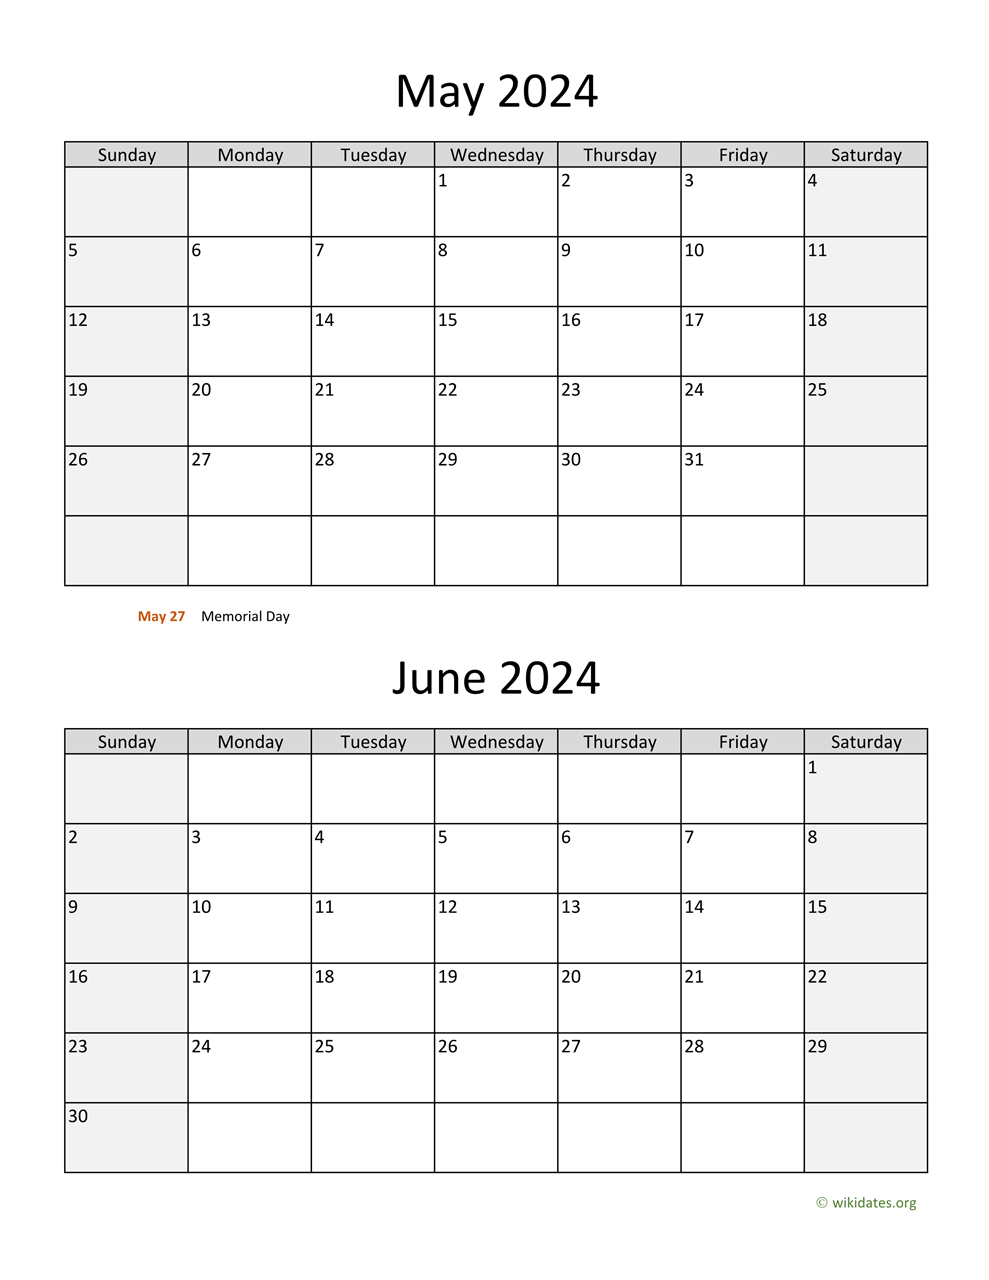 May And June 2024 Calendar | Wikidates for May/June Calendar 2024 Printable